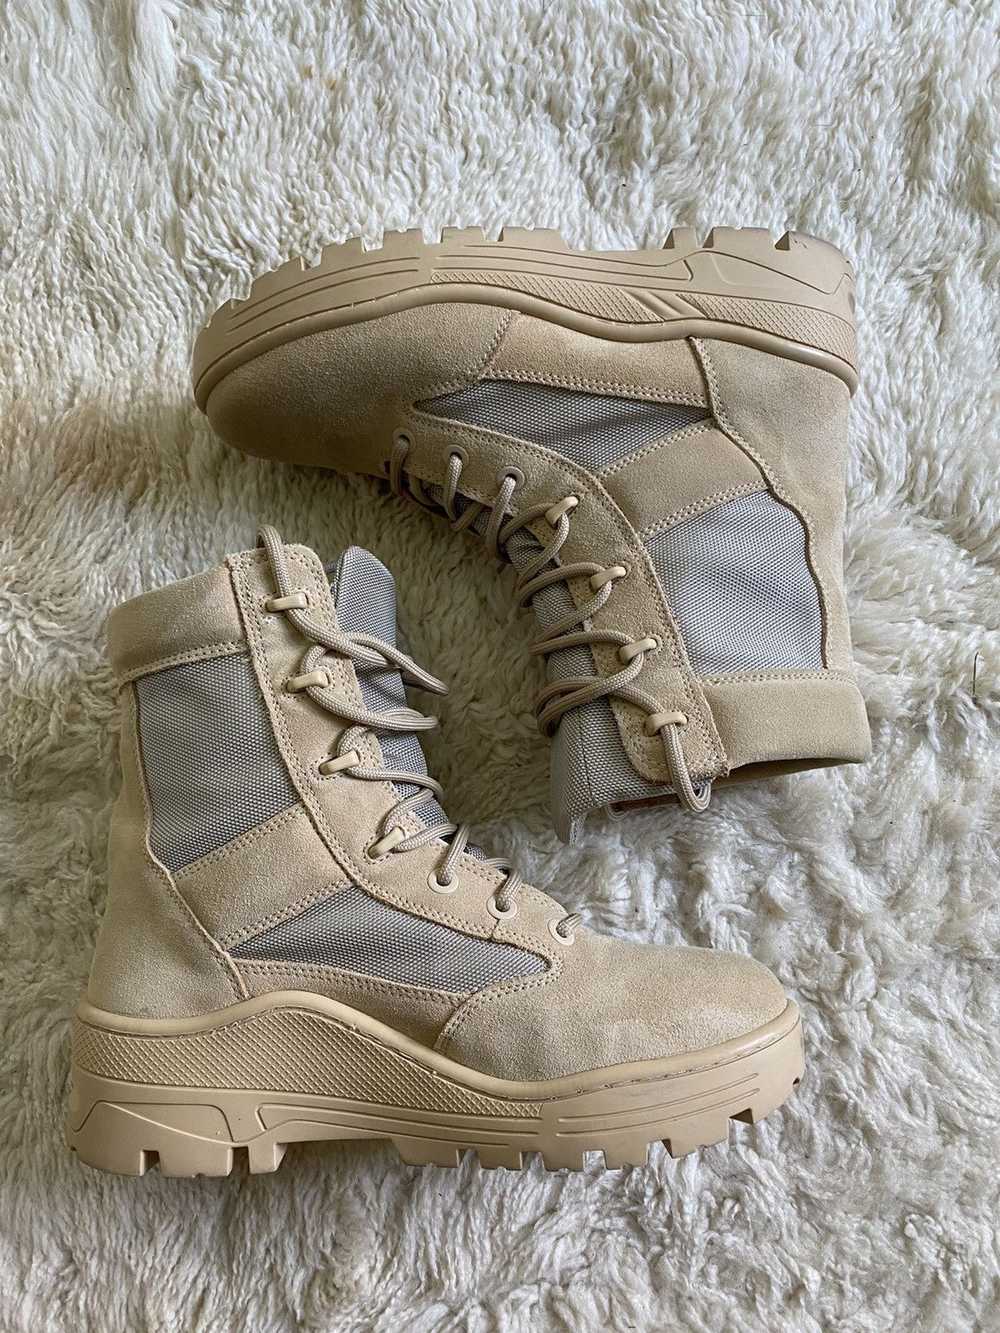 Yeezy Season Yeezy Season 4 Military Combat Boots - image 1